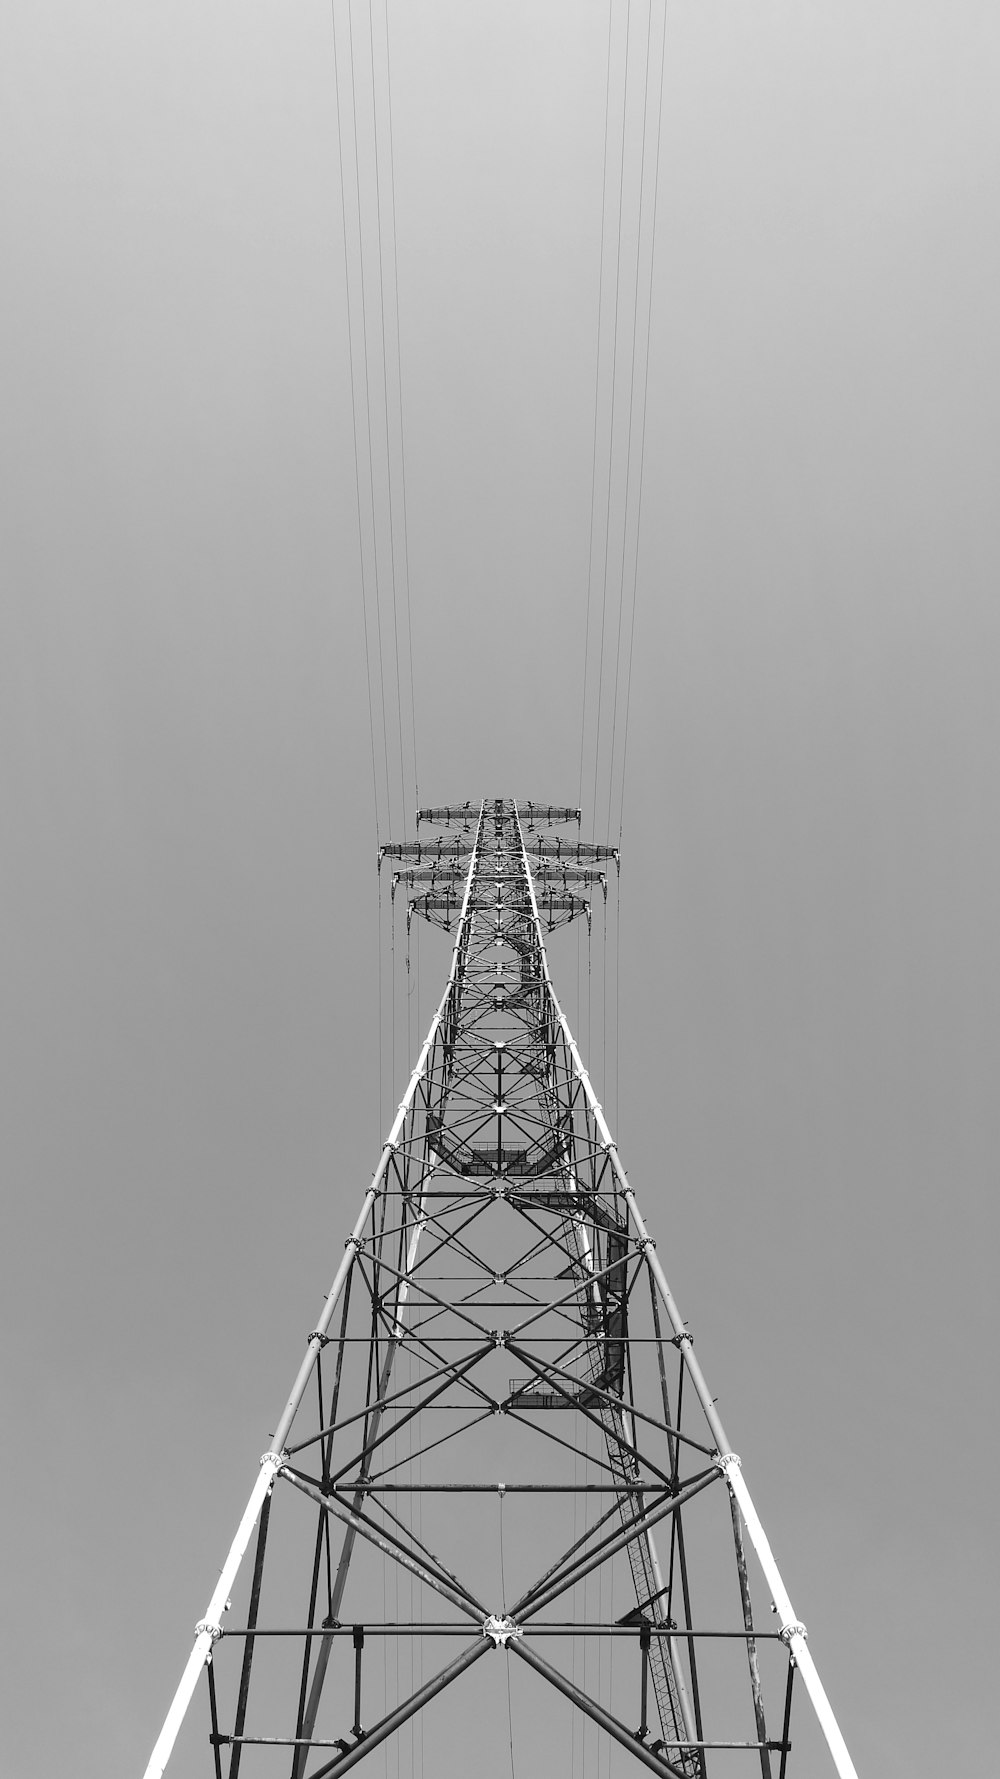 fotografia em escala de cinza da torre de metal